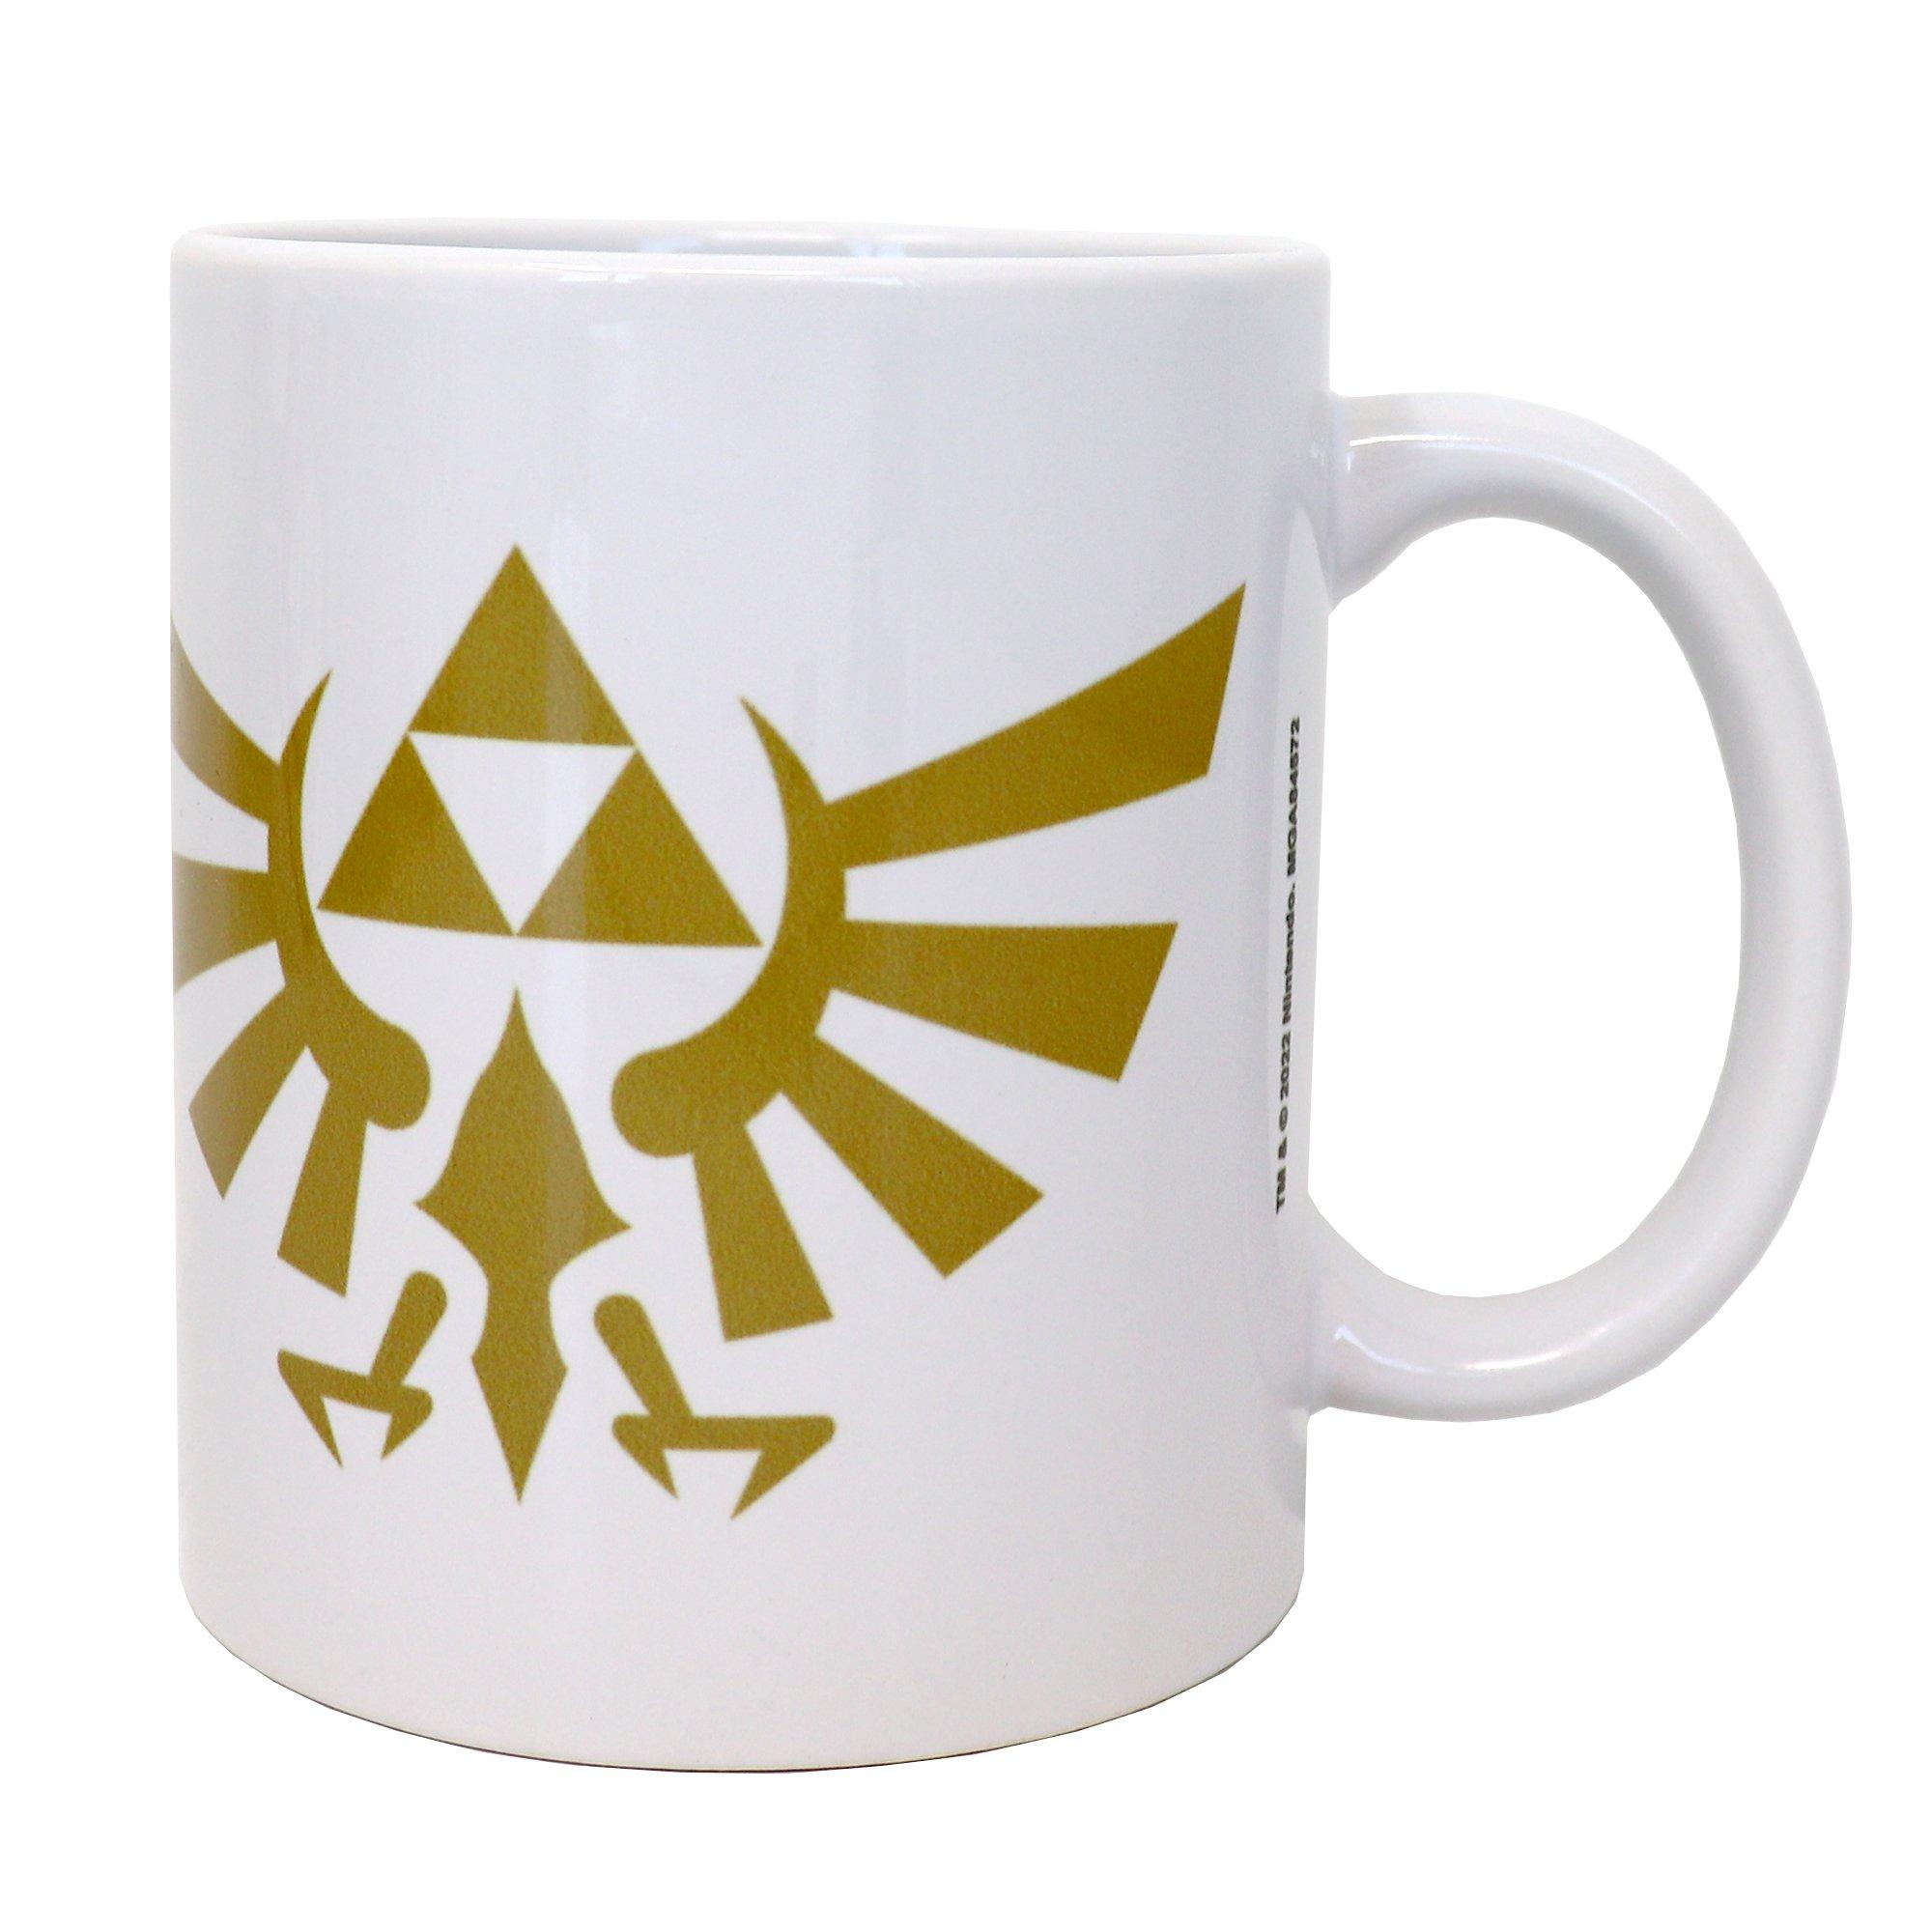 https://media.gamestop.com/i/gamestop/20002324_ALT02/The-Legend-of-Zelda-Hylian-Crest-11oz-Mug?$pdp$